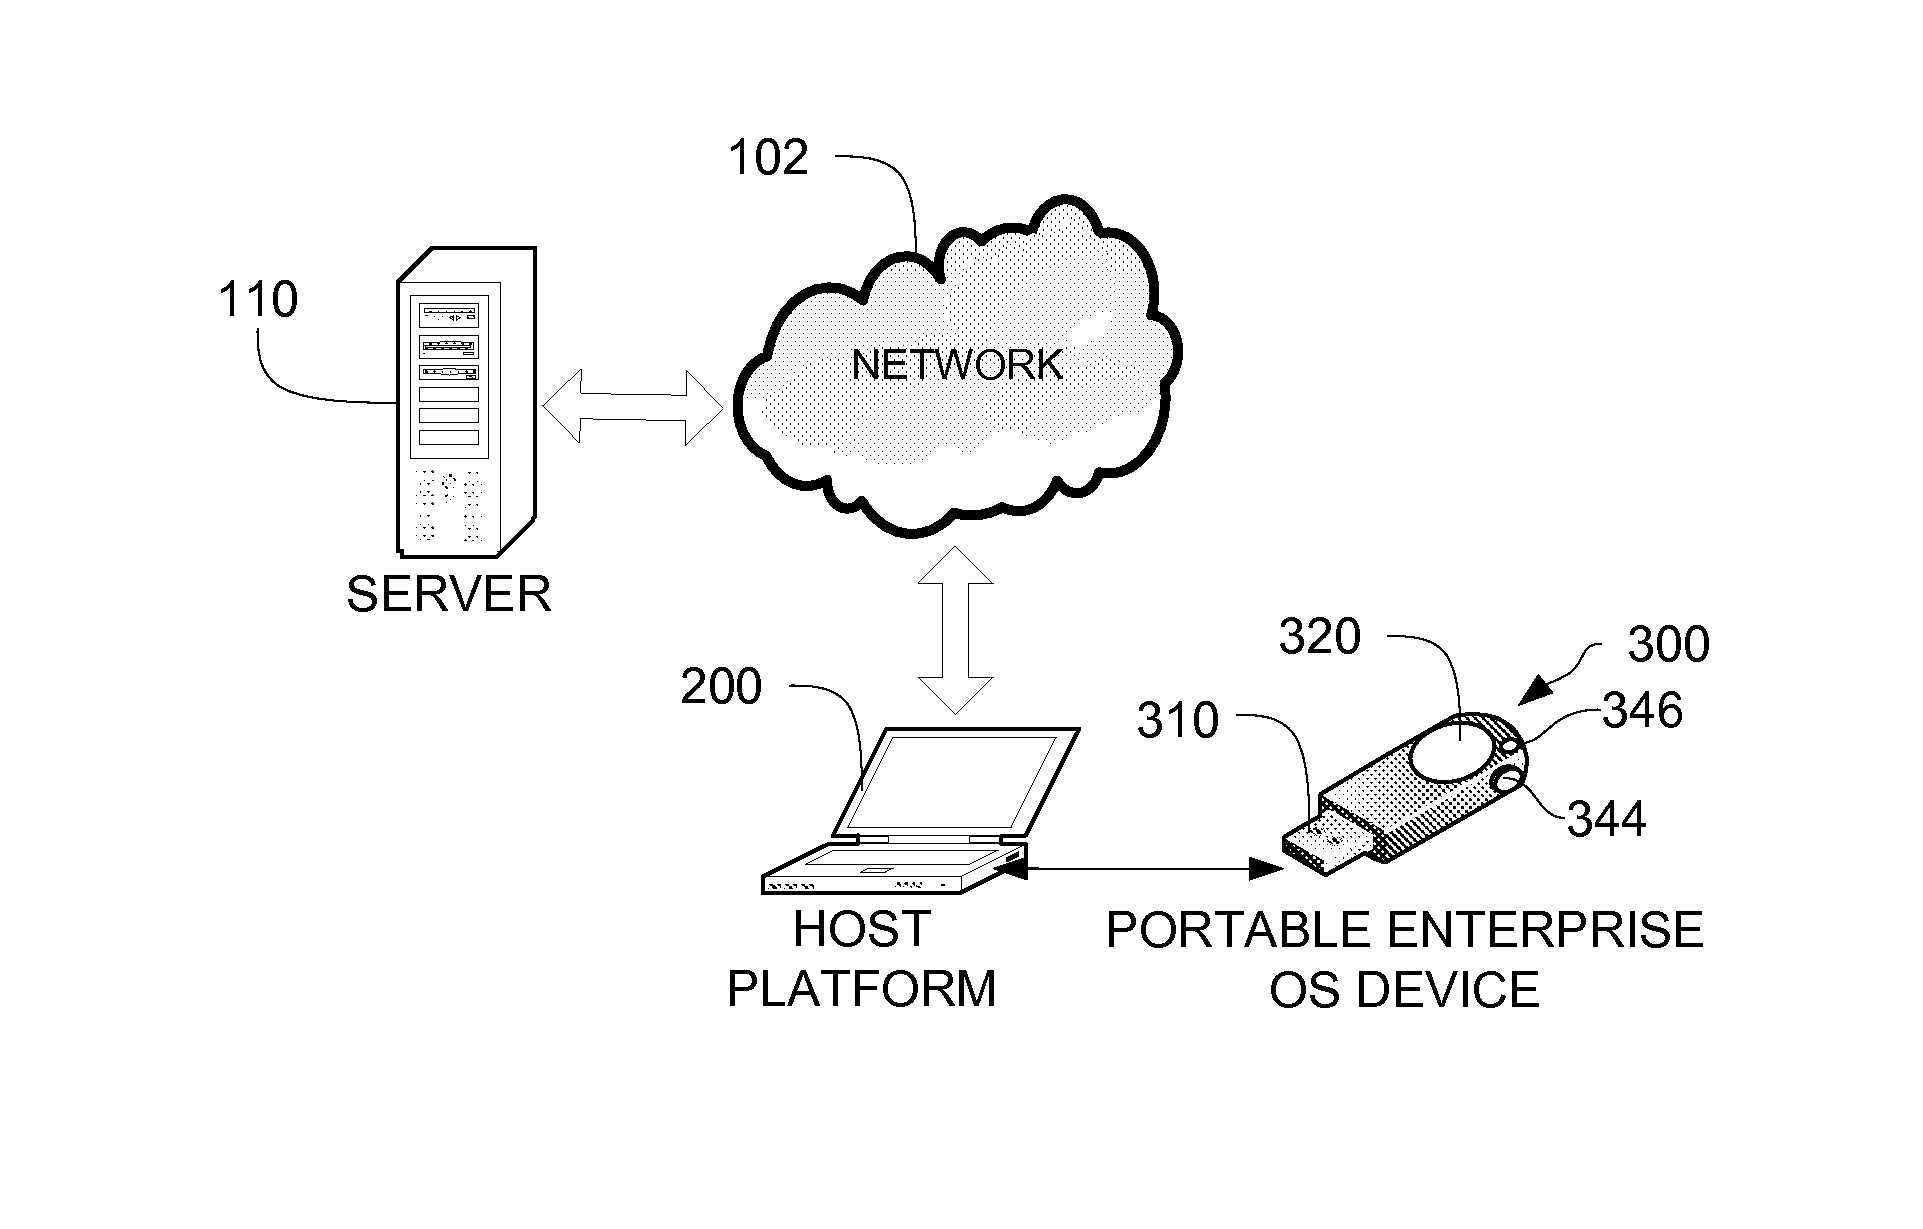 Portable, secure enterprise platforms